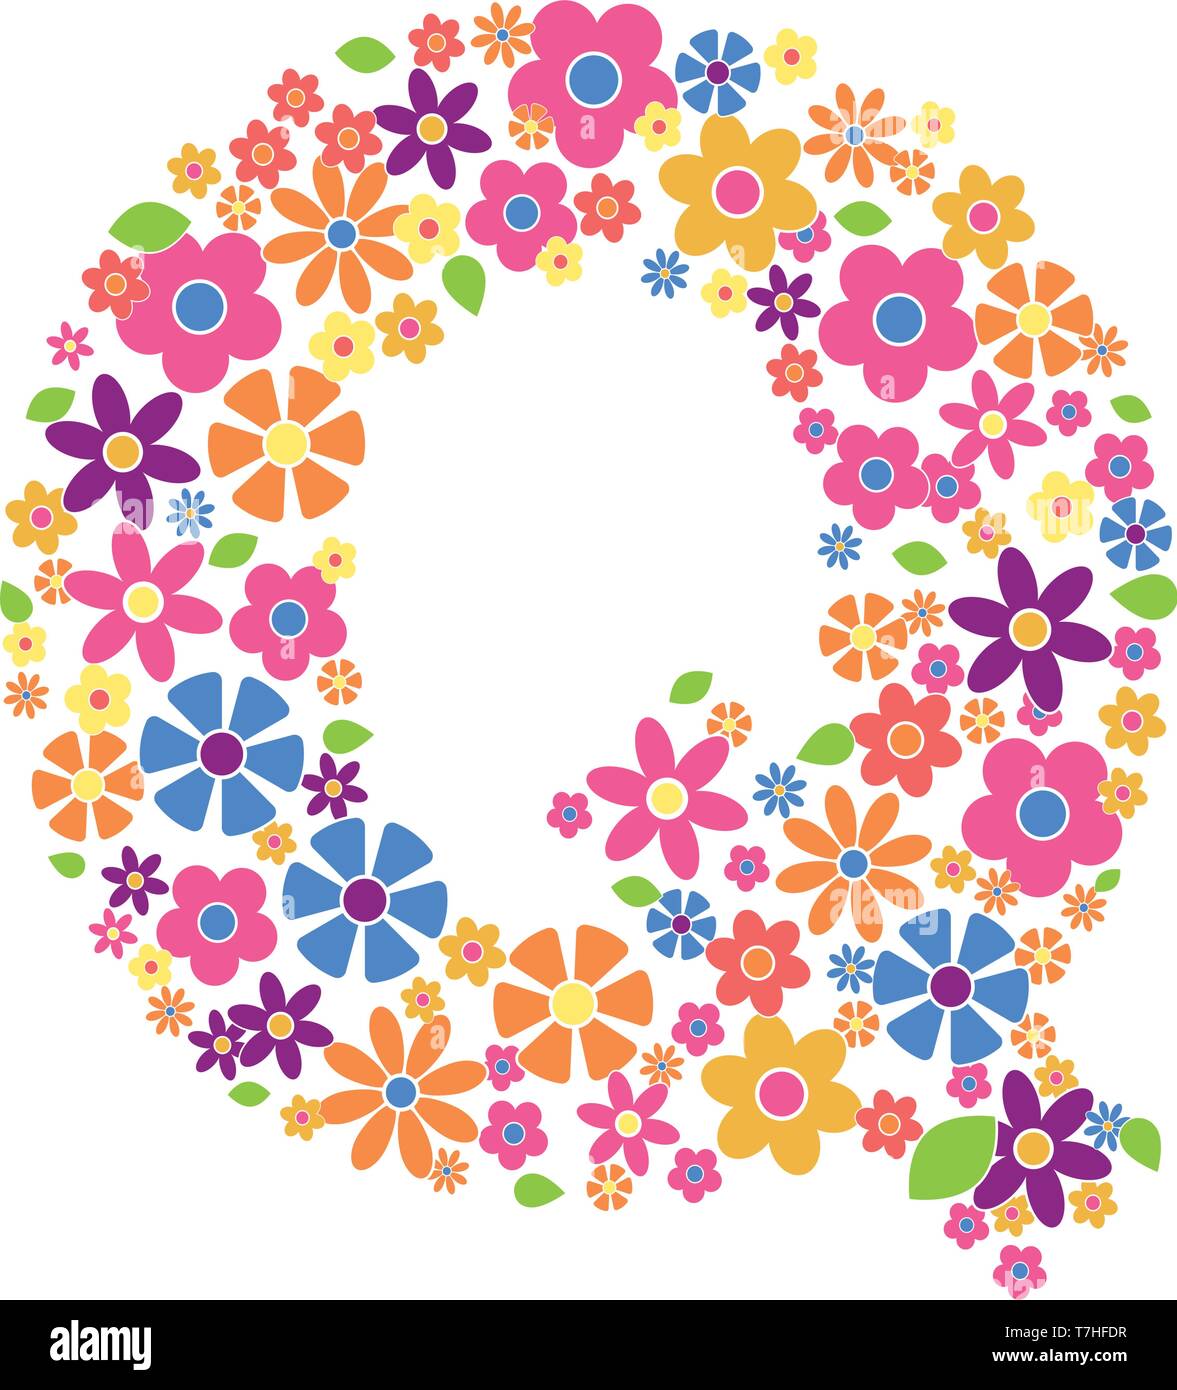 Buchstabe Q gefüllt mit einer Vielzahl von bunten Blumen auf weißem Hintergrund Vektor-illustration isoliert Stock Vektor